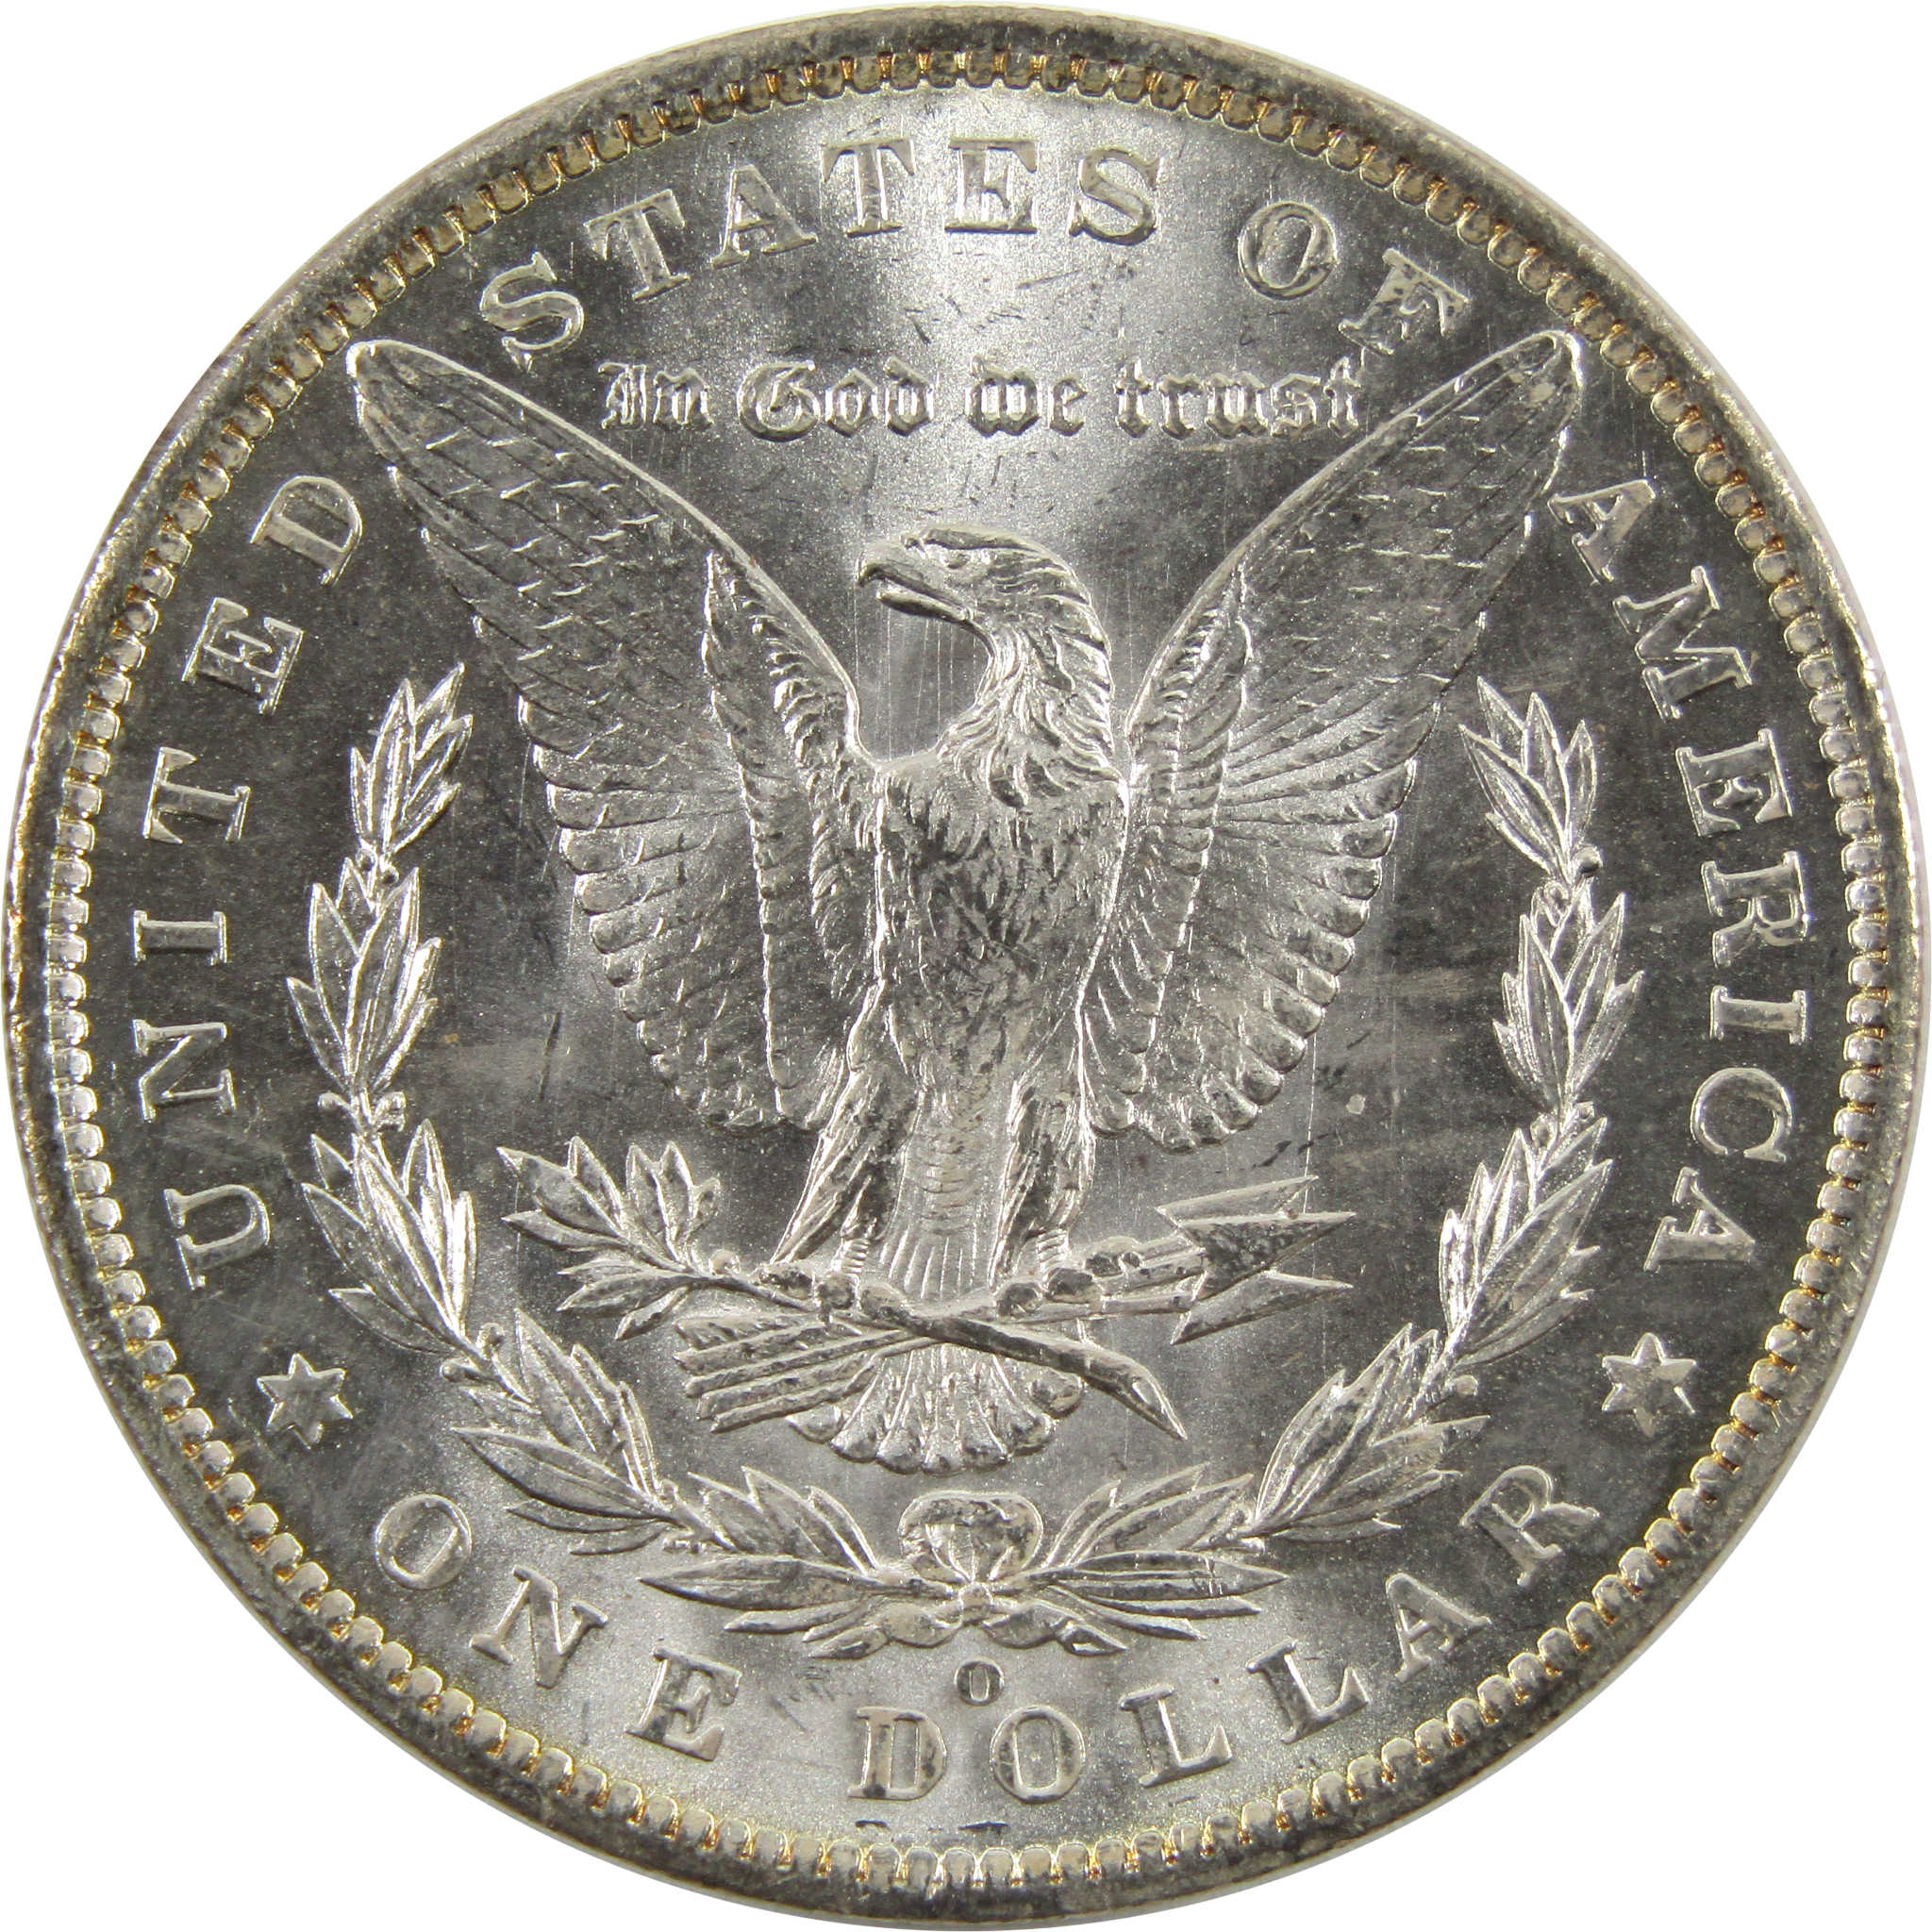 1885 O Morgan Dollar BU Choice Uncirculated 90% Silver SKU:CPC4332 - Morgan coin - Morgan silver dollar - Morgan silver dollar for sale - Profile Coins &amp; Collectibles